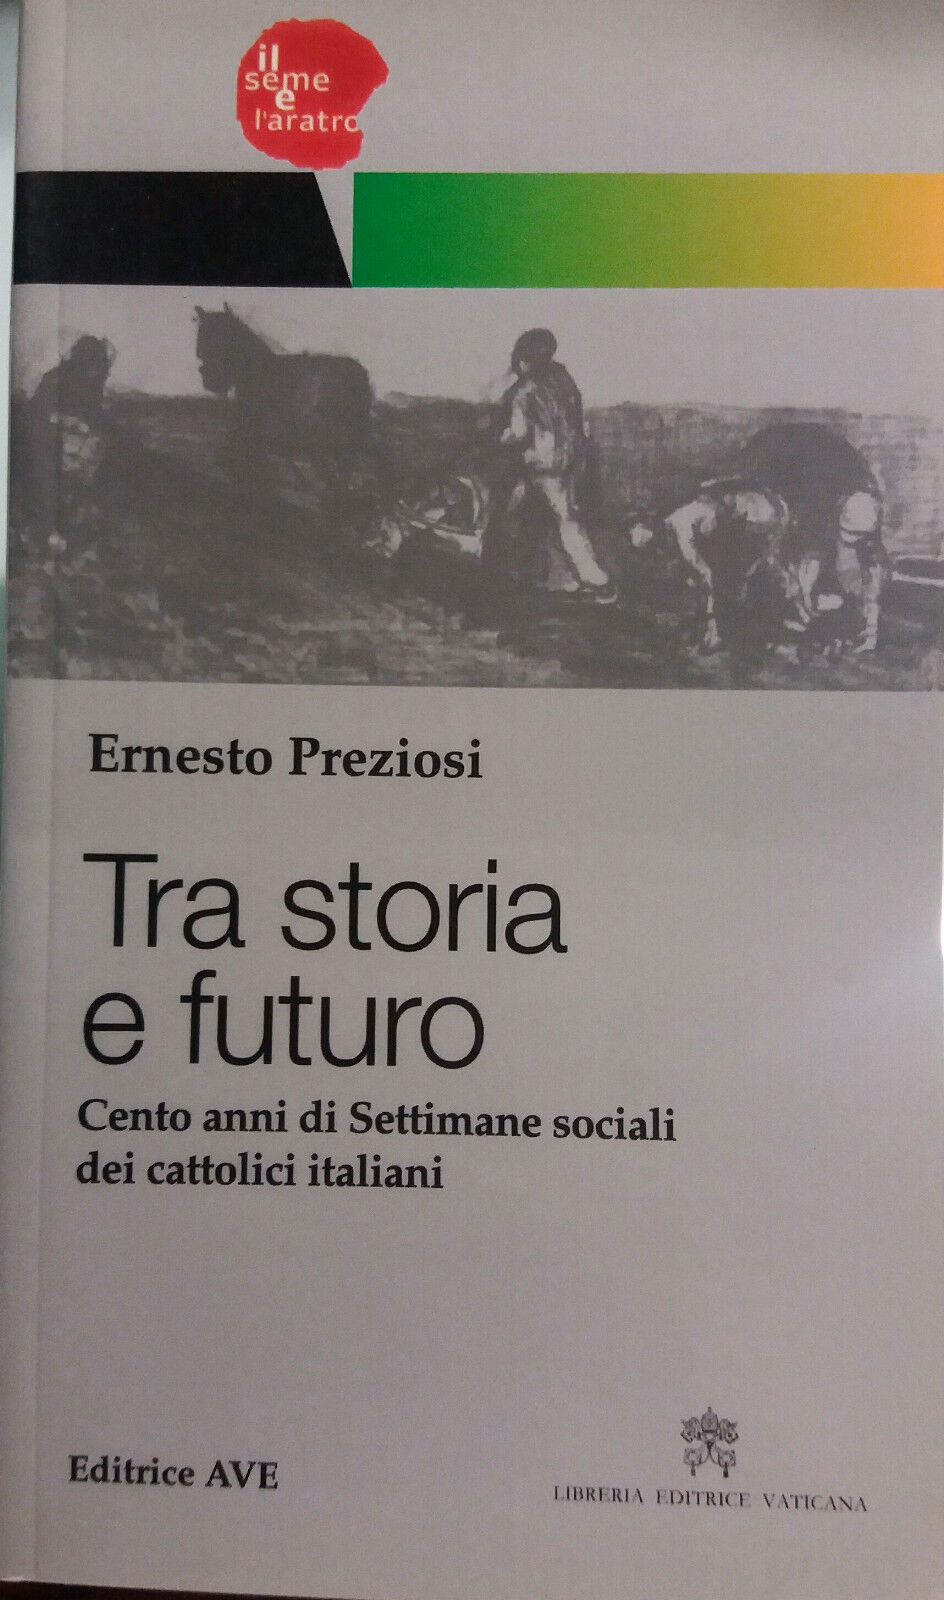 Tra storia e futuro - Ernesto Preziosi - Editrice AVE - 2010 - G